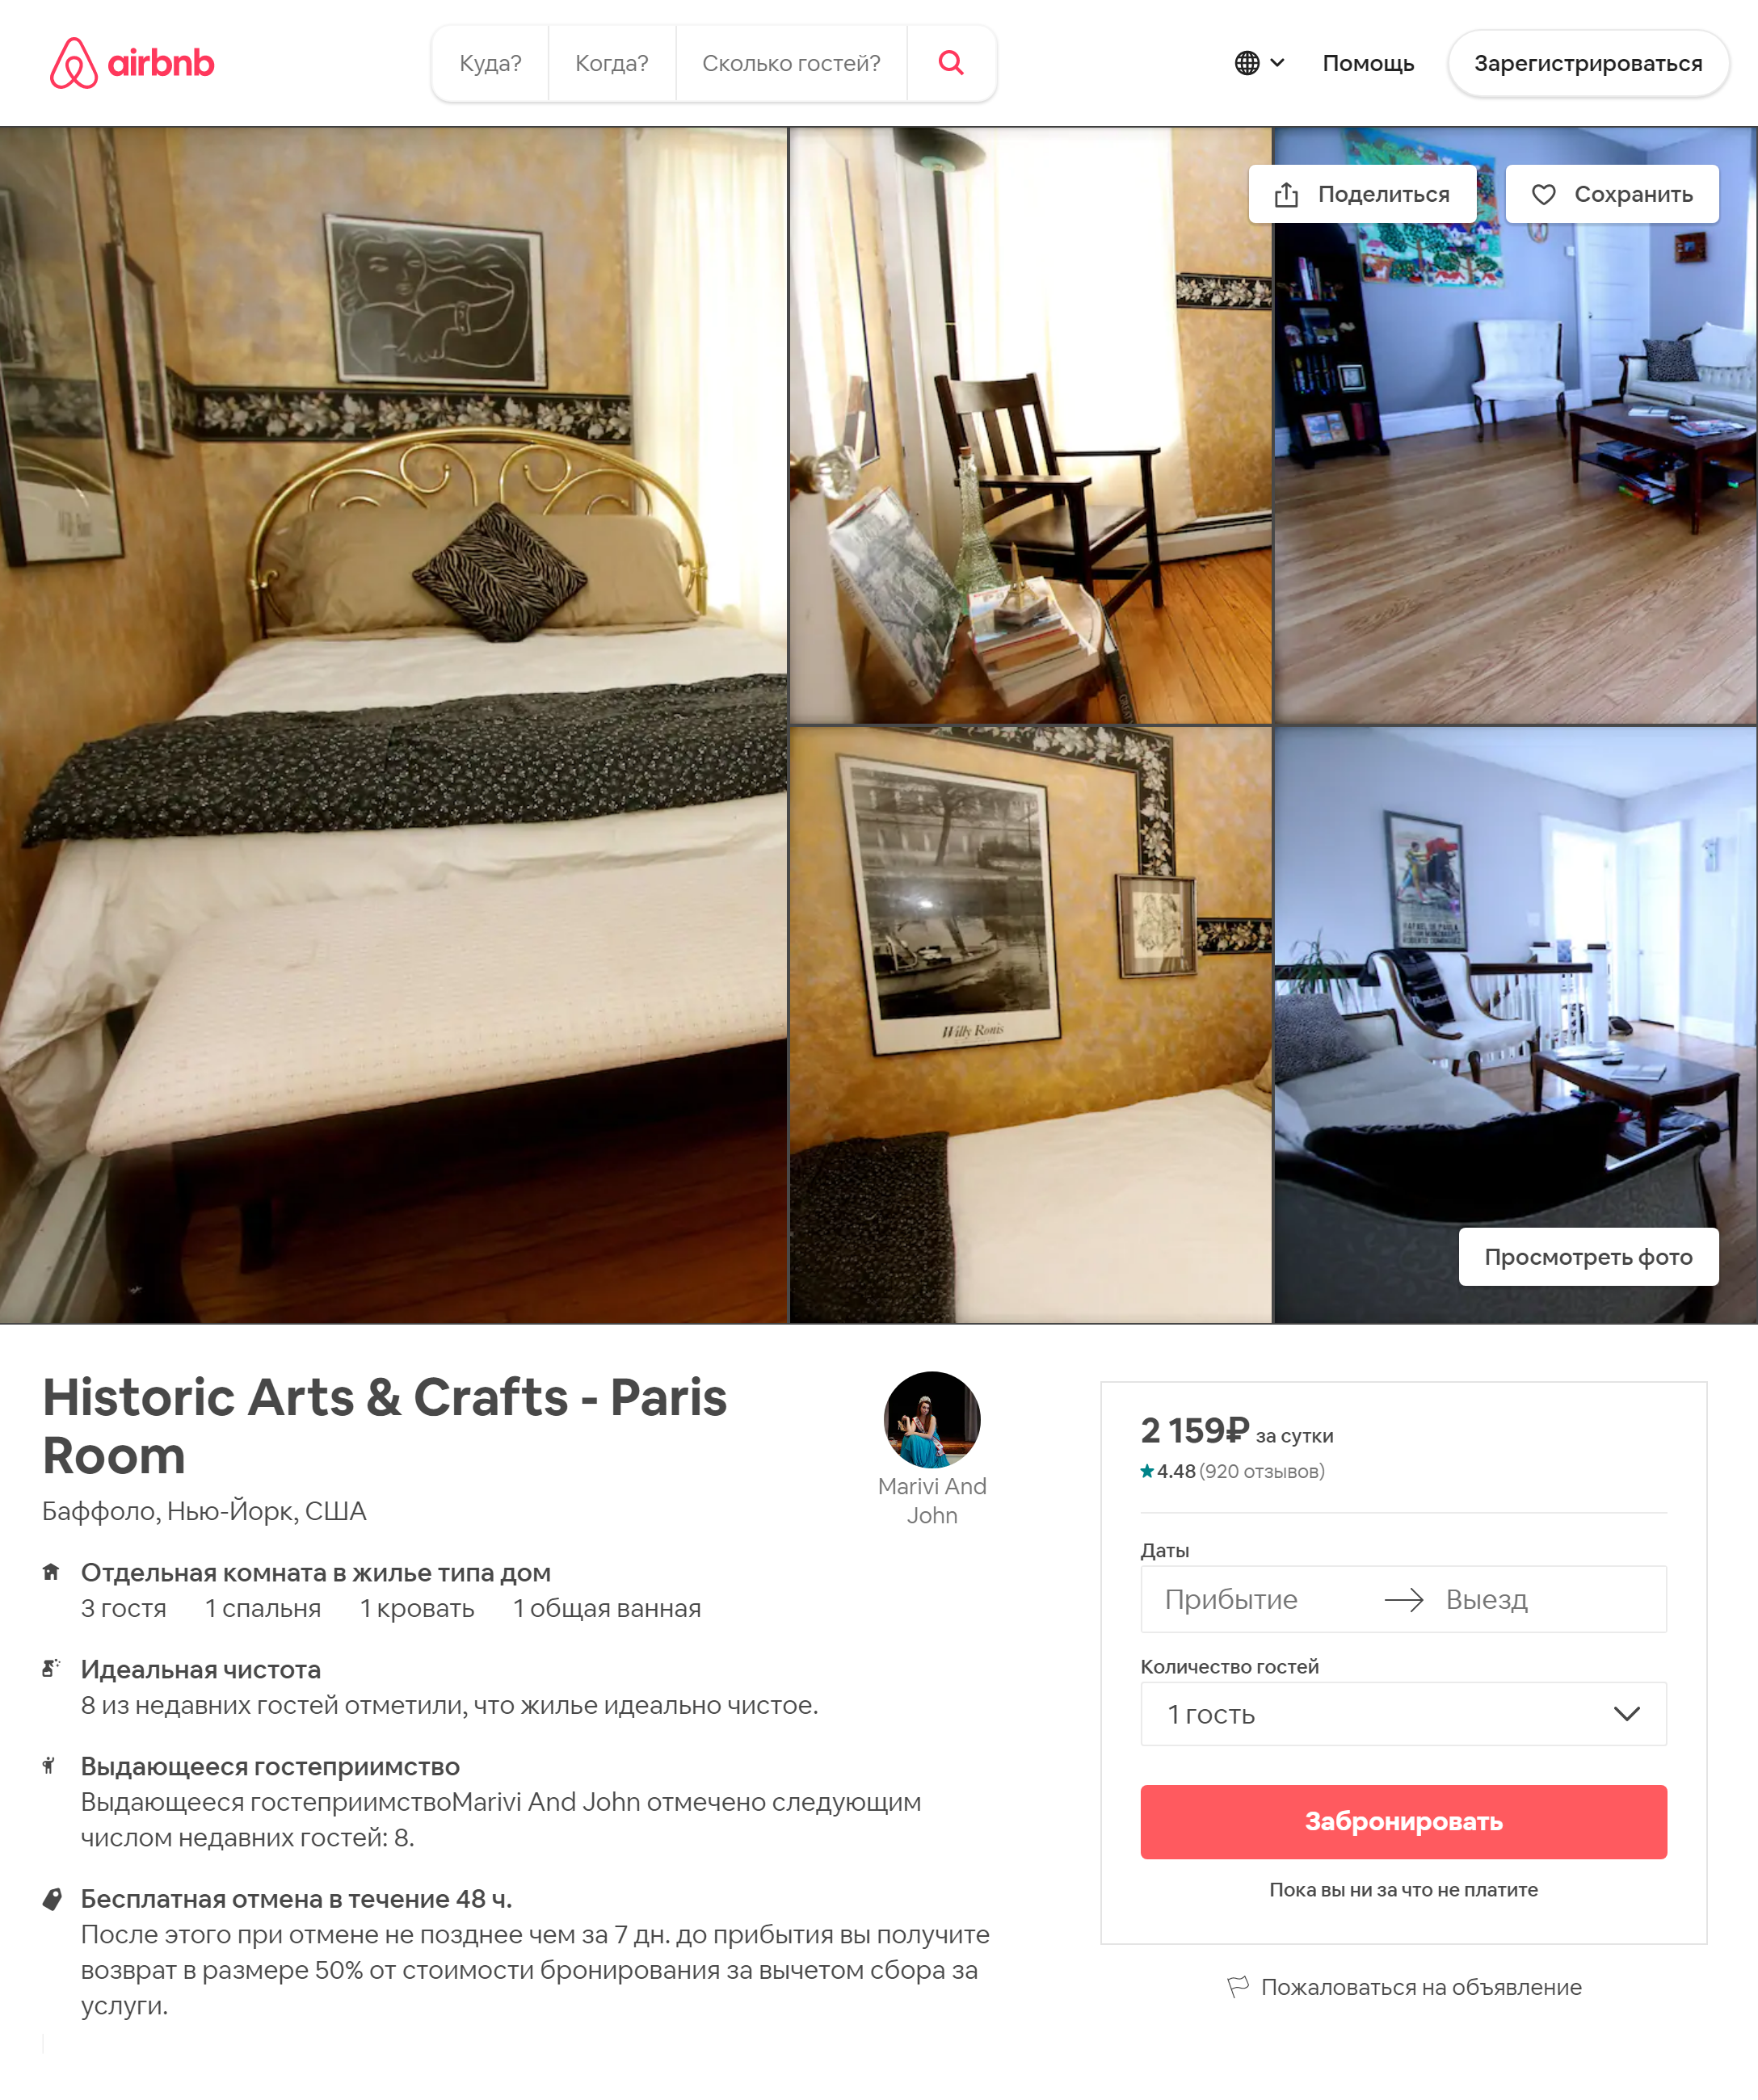 За 28 $ (около 2044 ₽) можно пожить в доме со 100-летней историей в спальне в парижском стиле. За дополнительную плату хозяева предлагают экскурсии и трансфер до даунтауна или аэропорта. Хозяин дома — писатель. При желании гости могут получить его книгу с автографом. Источник: airbnb.ru